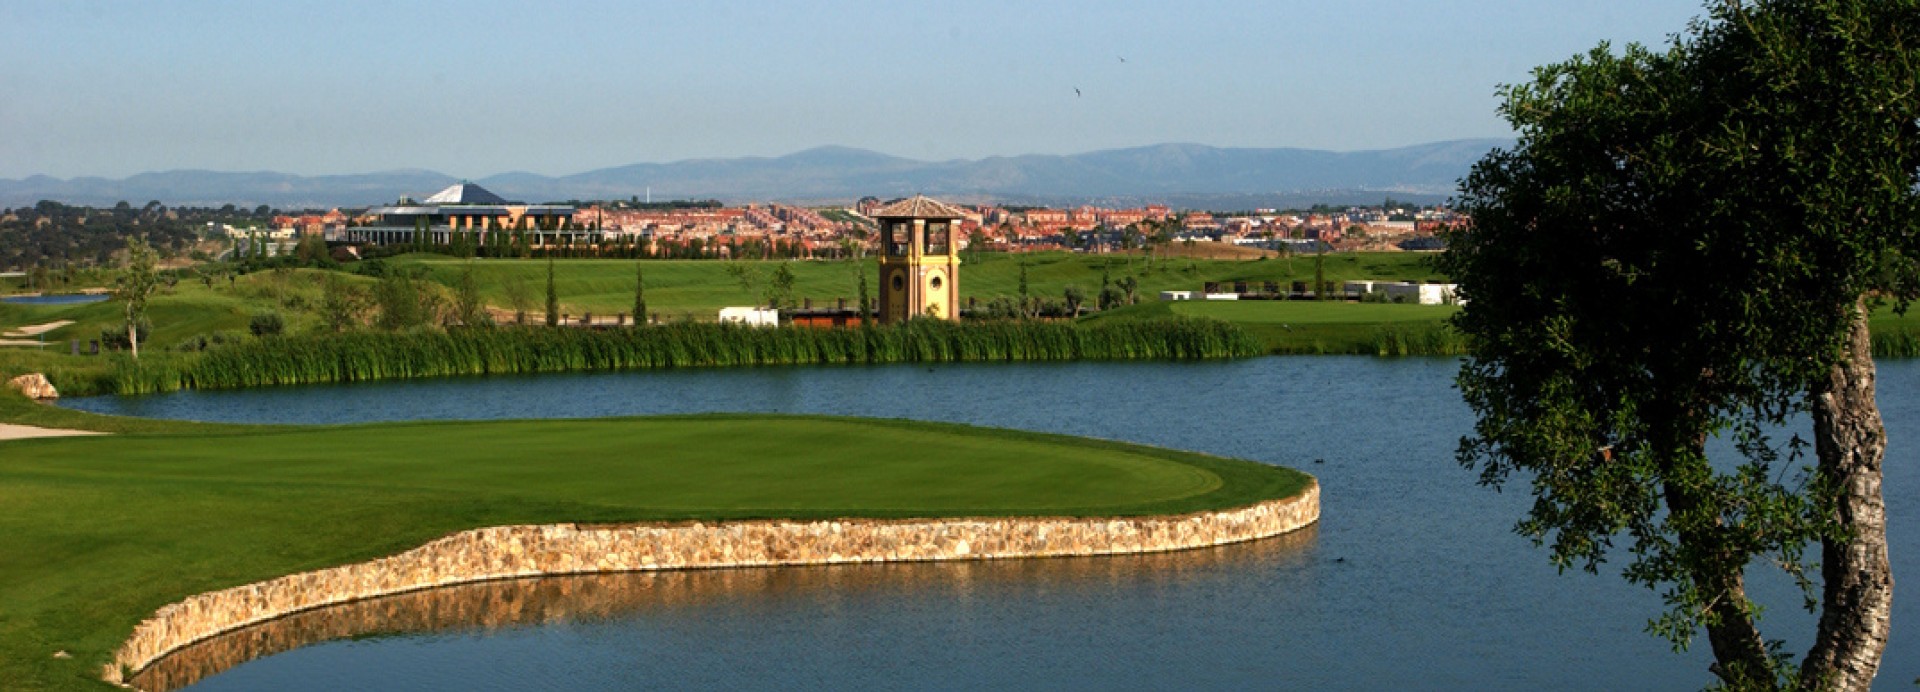 Santander Golf  | Golfové zájezdy, golfová dovolená, luxusní golf